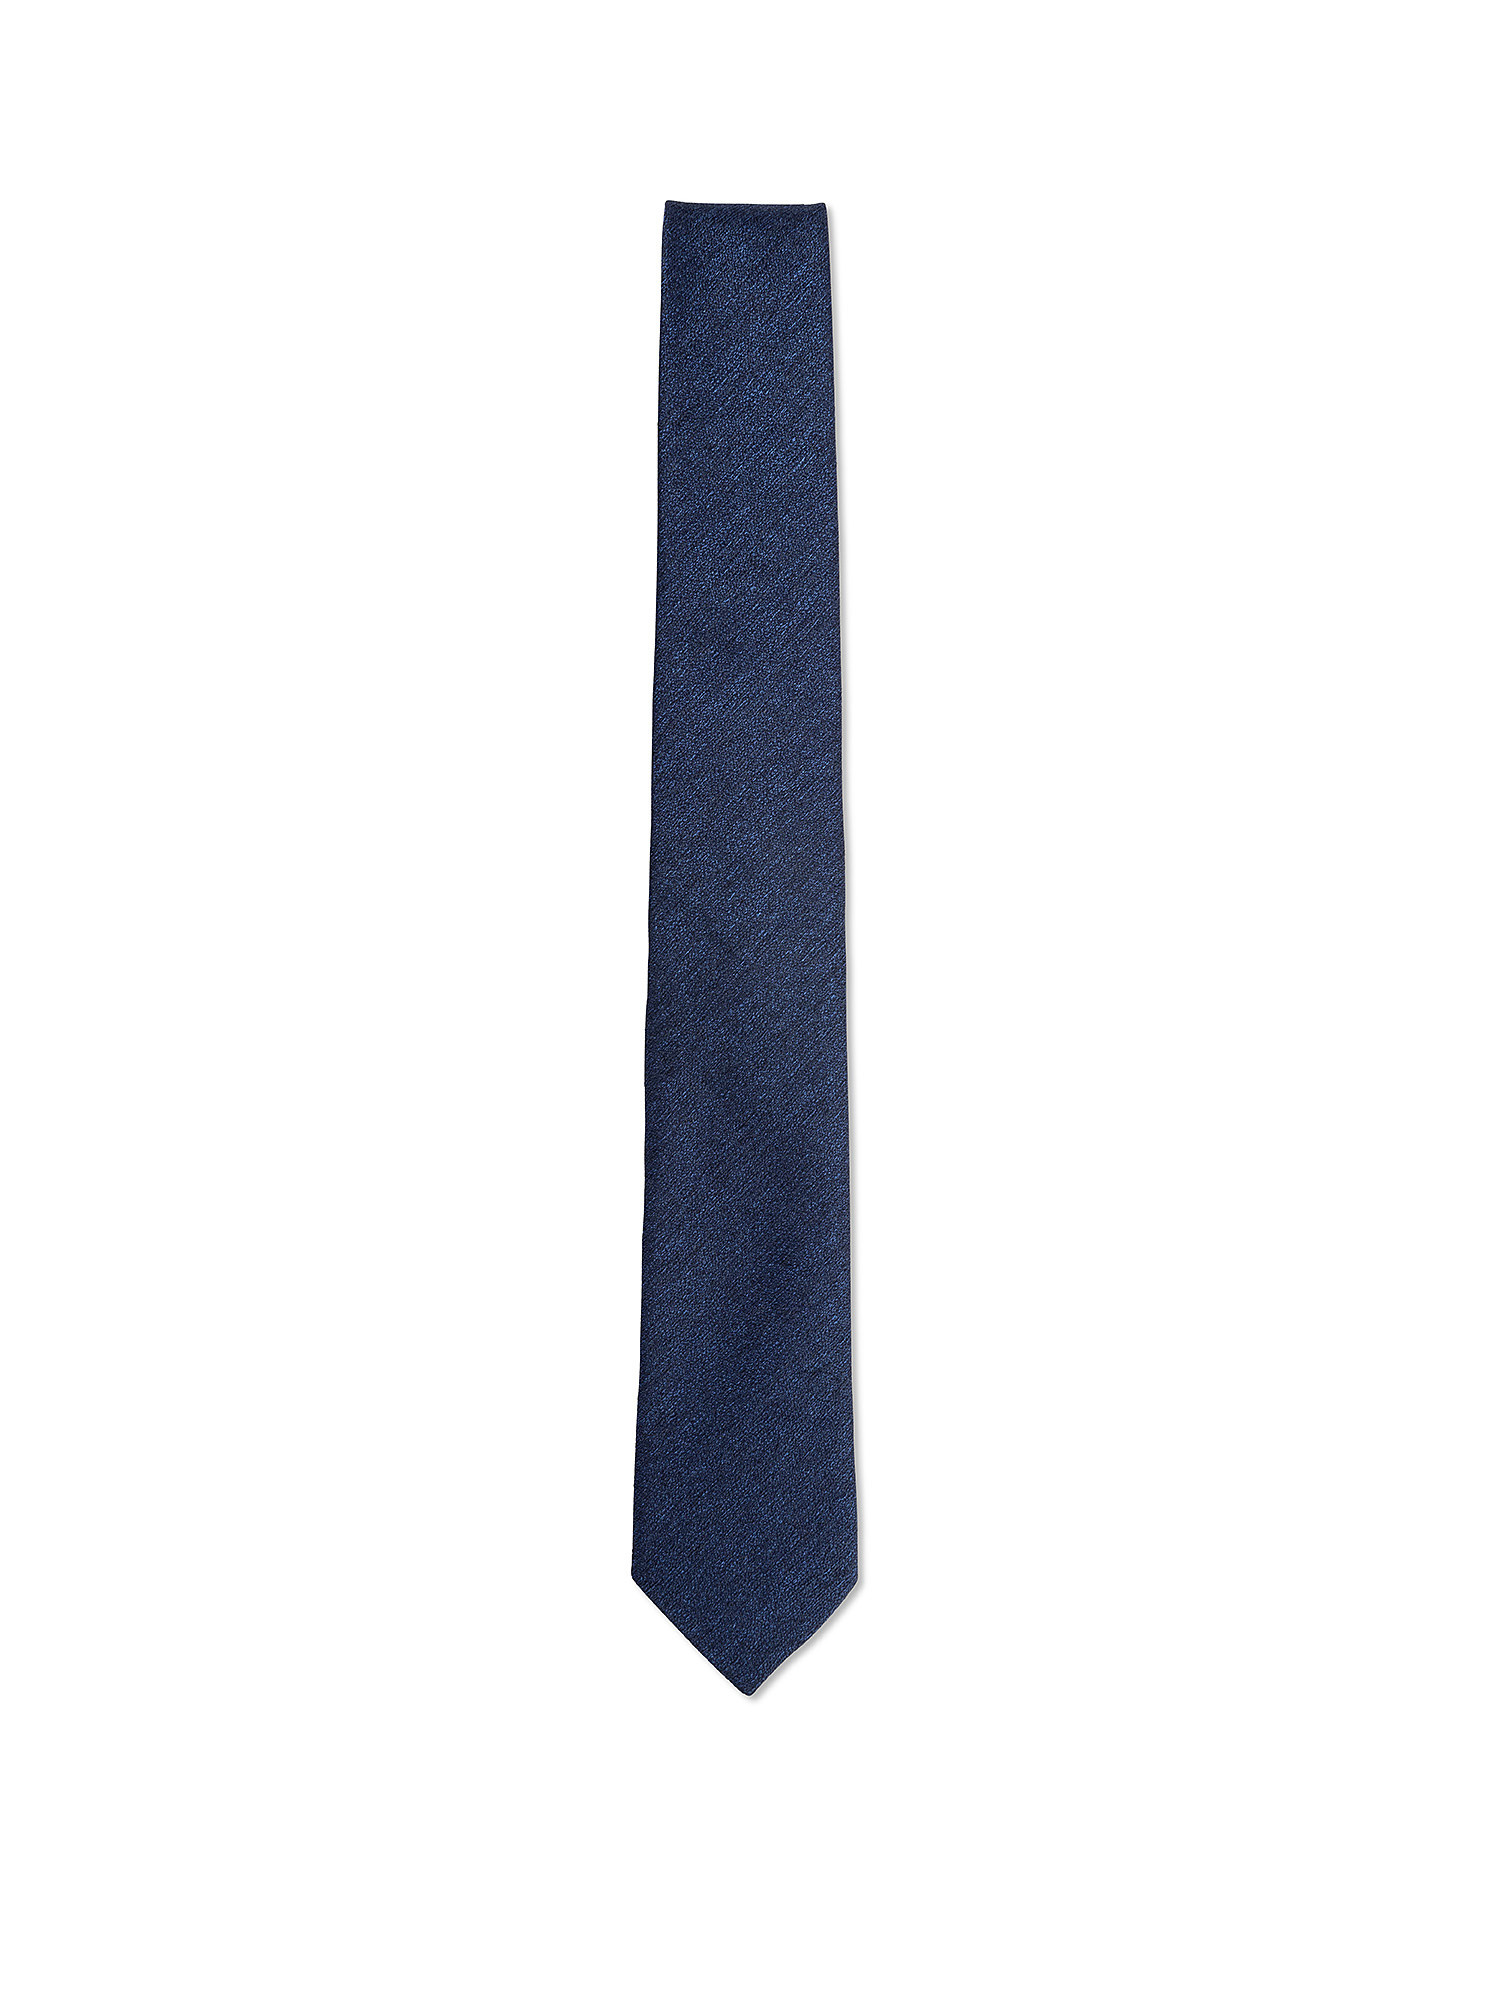 Cravatta in pura seta tinta unita, Blu scuro, large image number 0